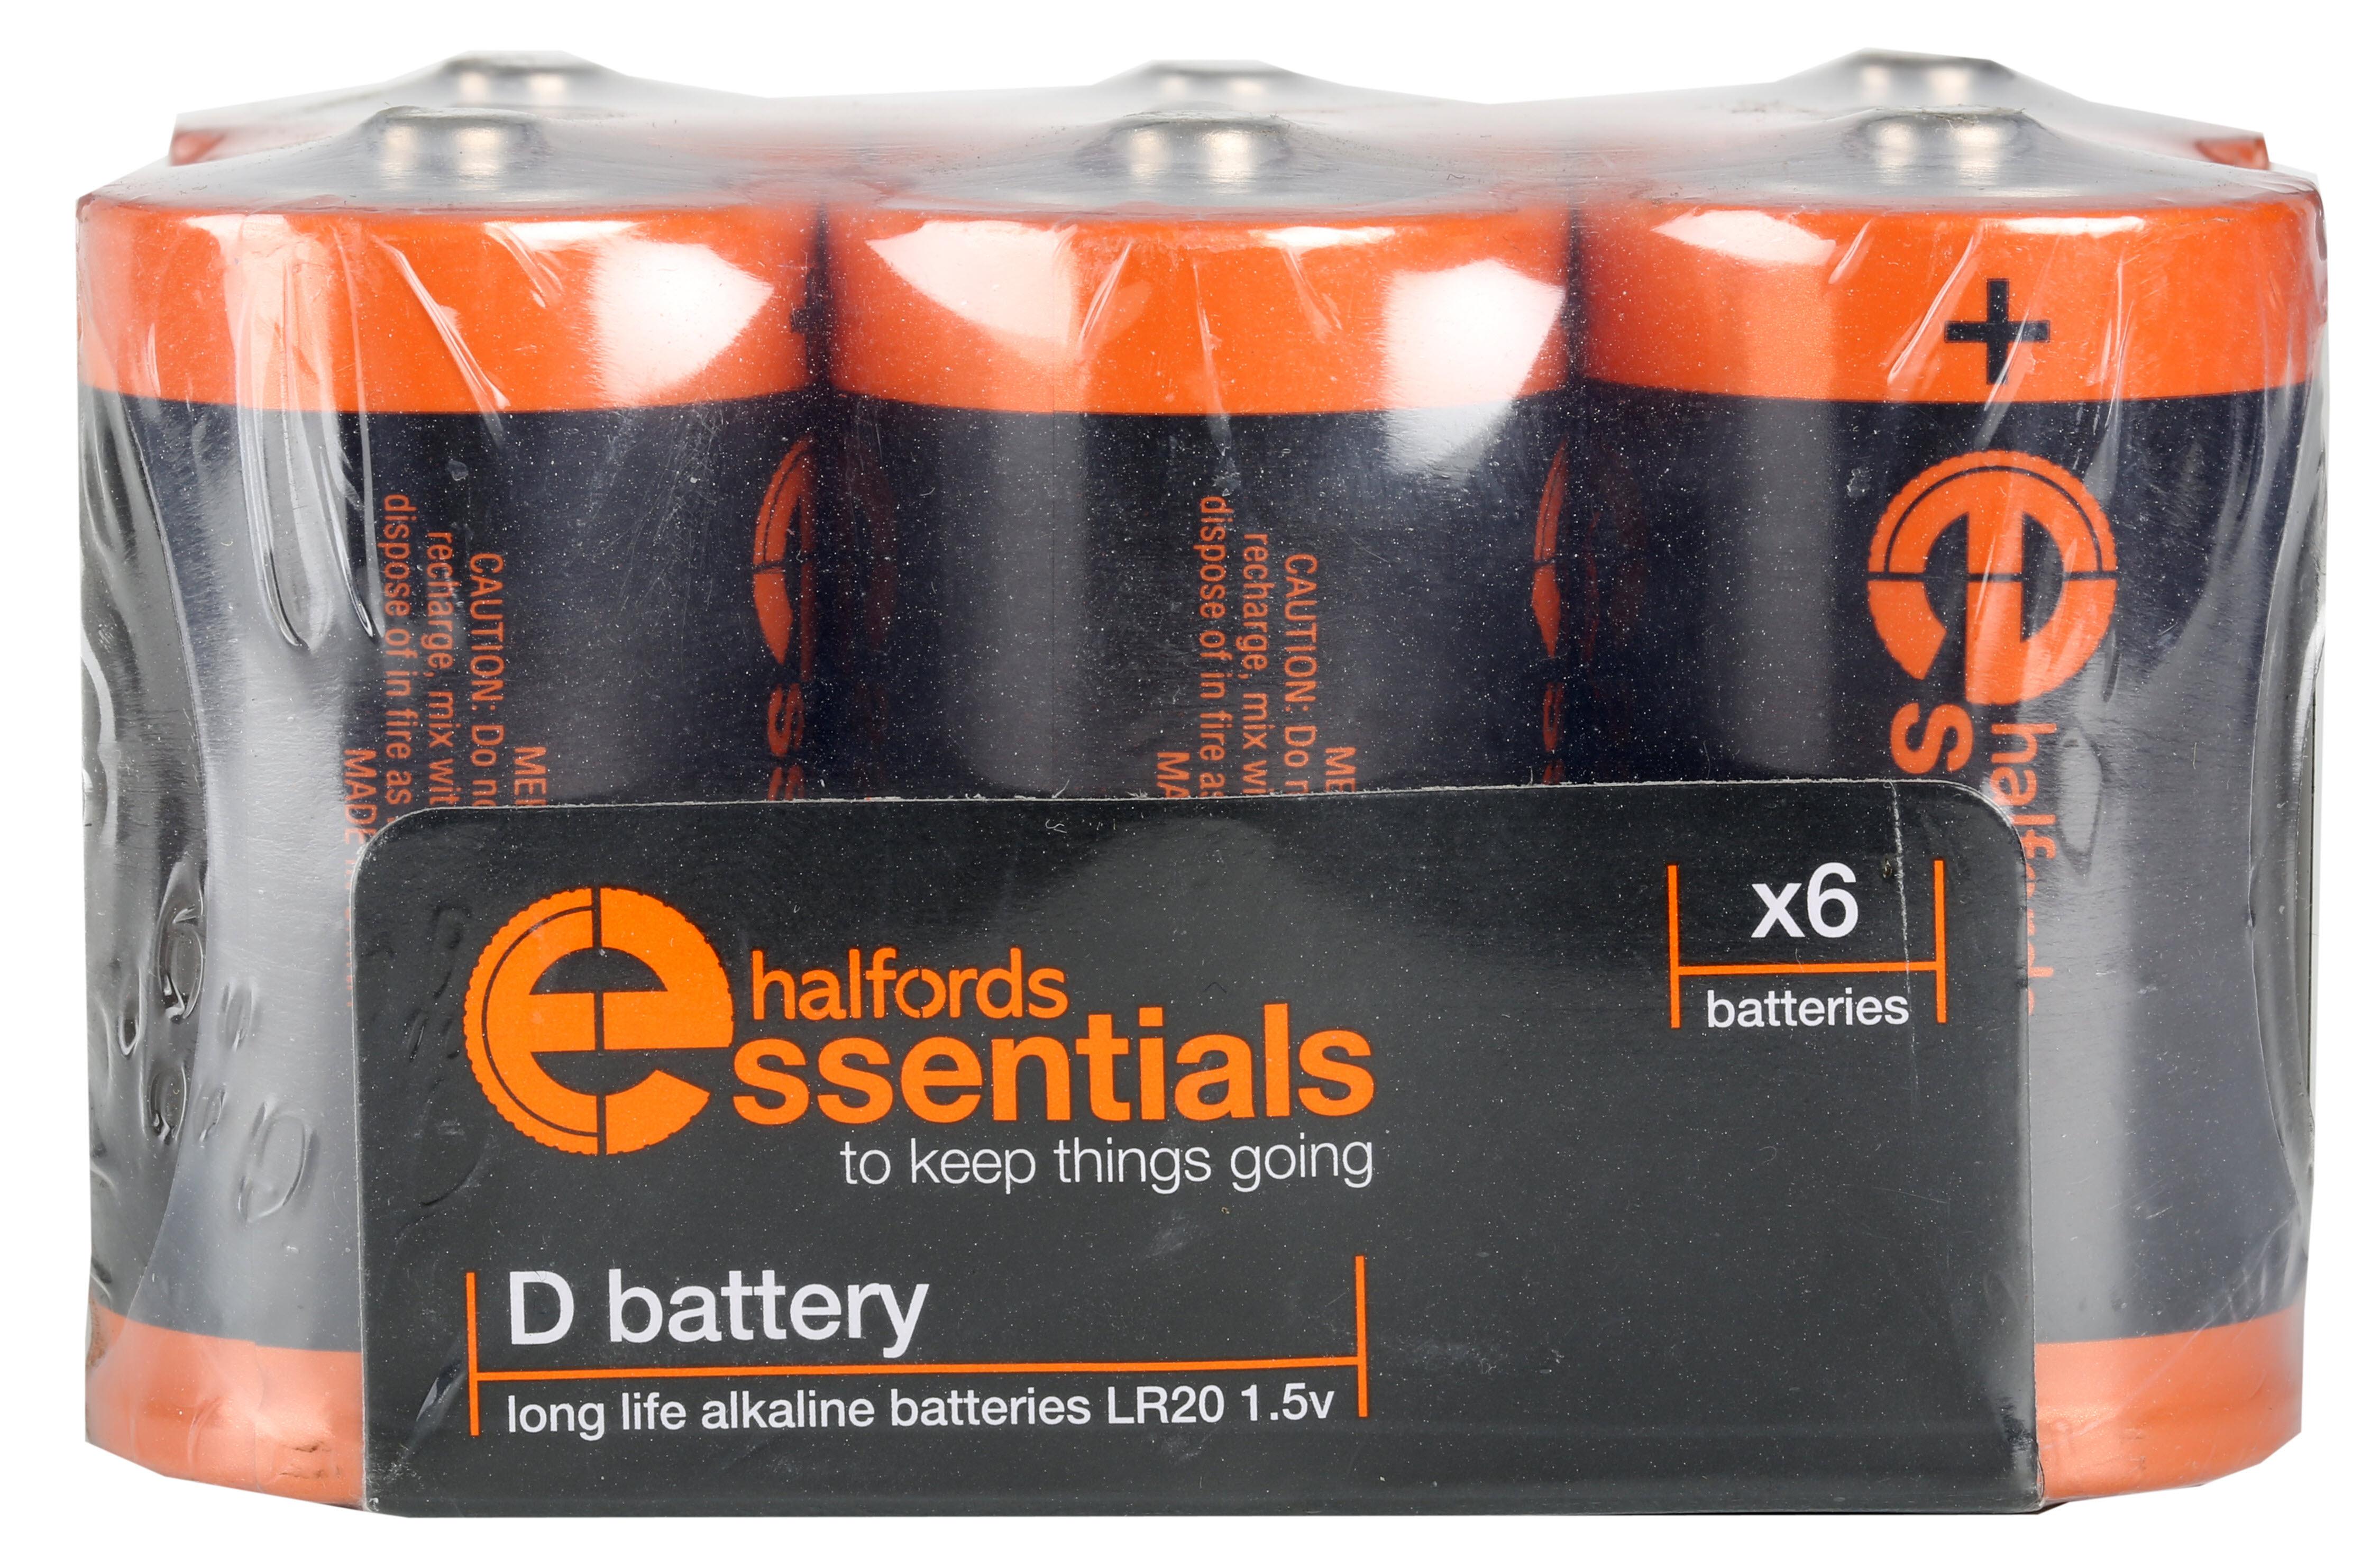 Halfords Essential Batteries D X6